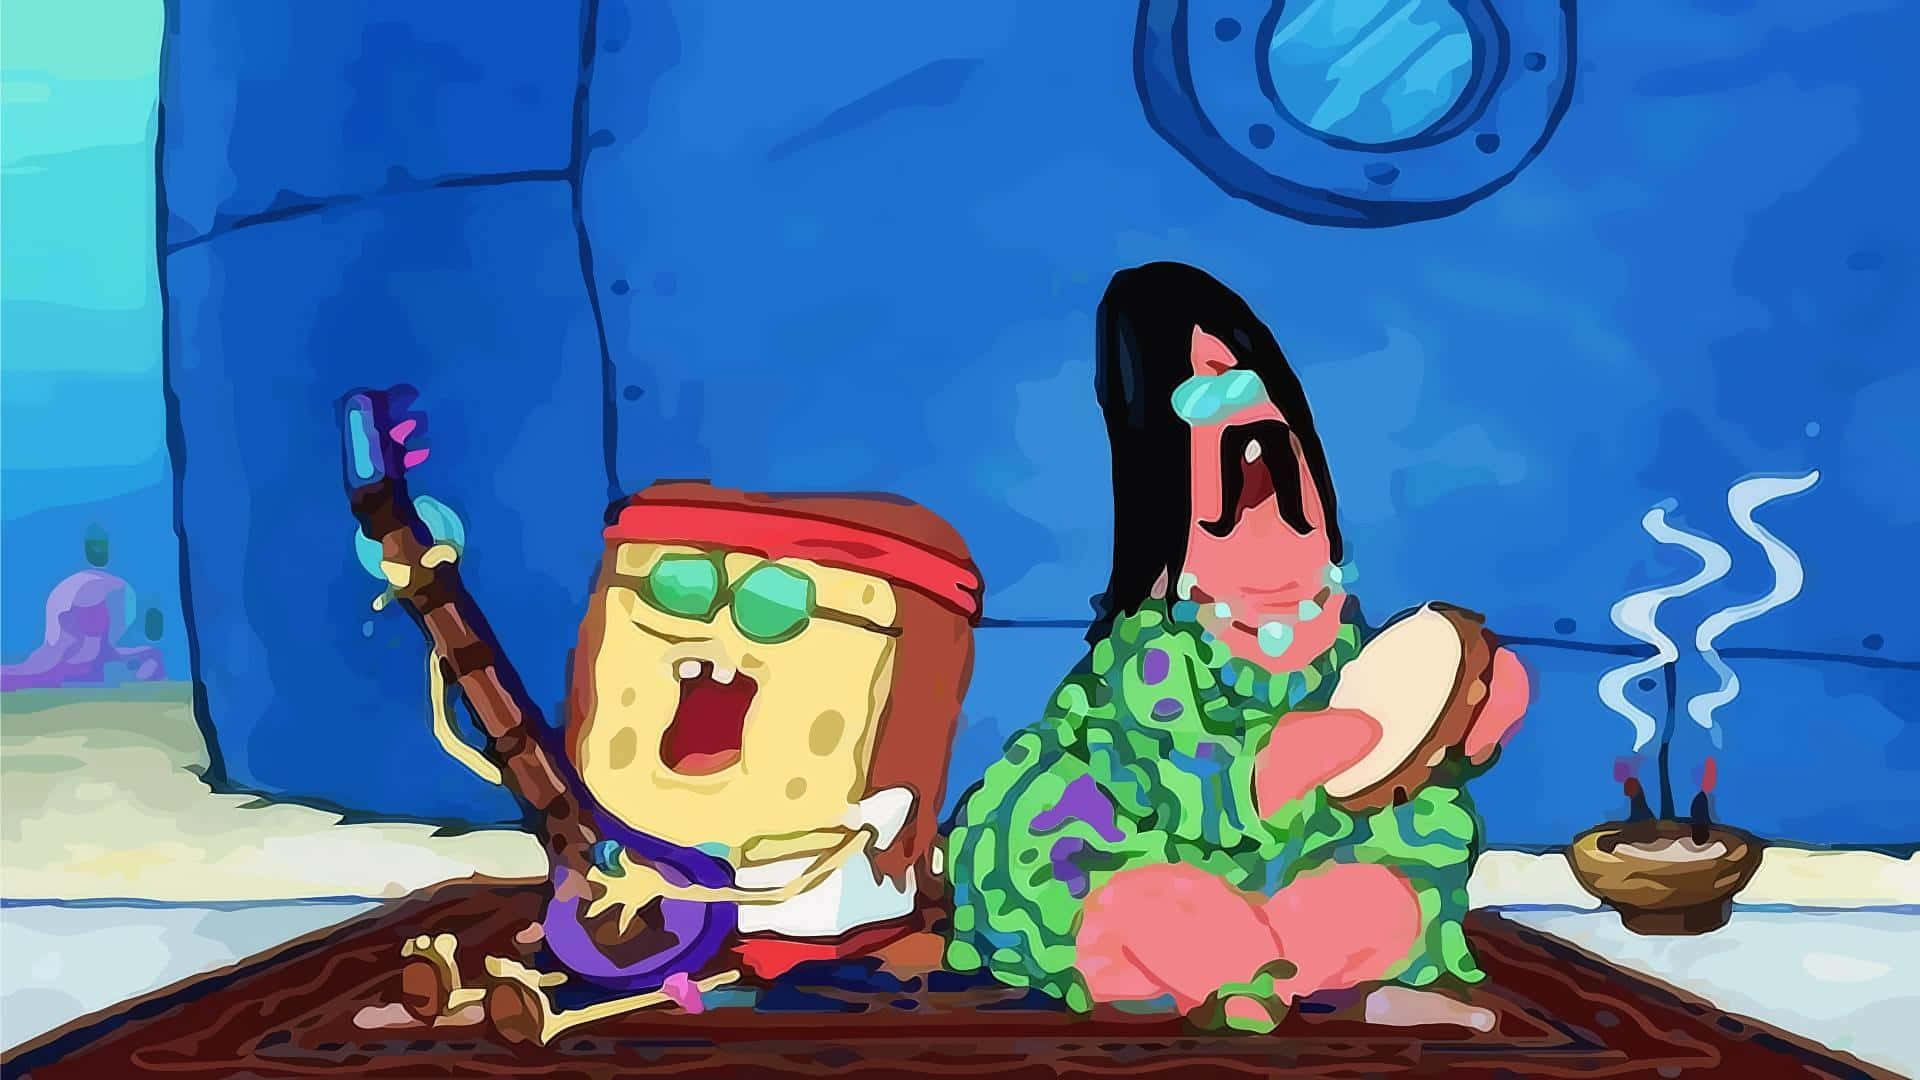 Æstetisk SpongeBob og Patrick synger. Wallpaper